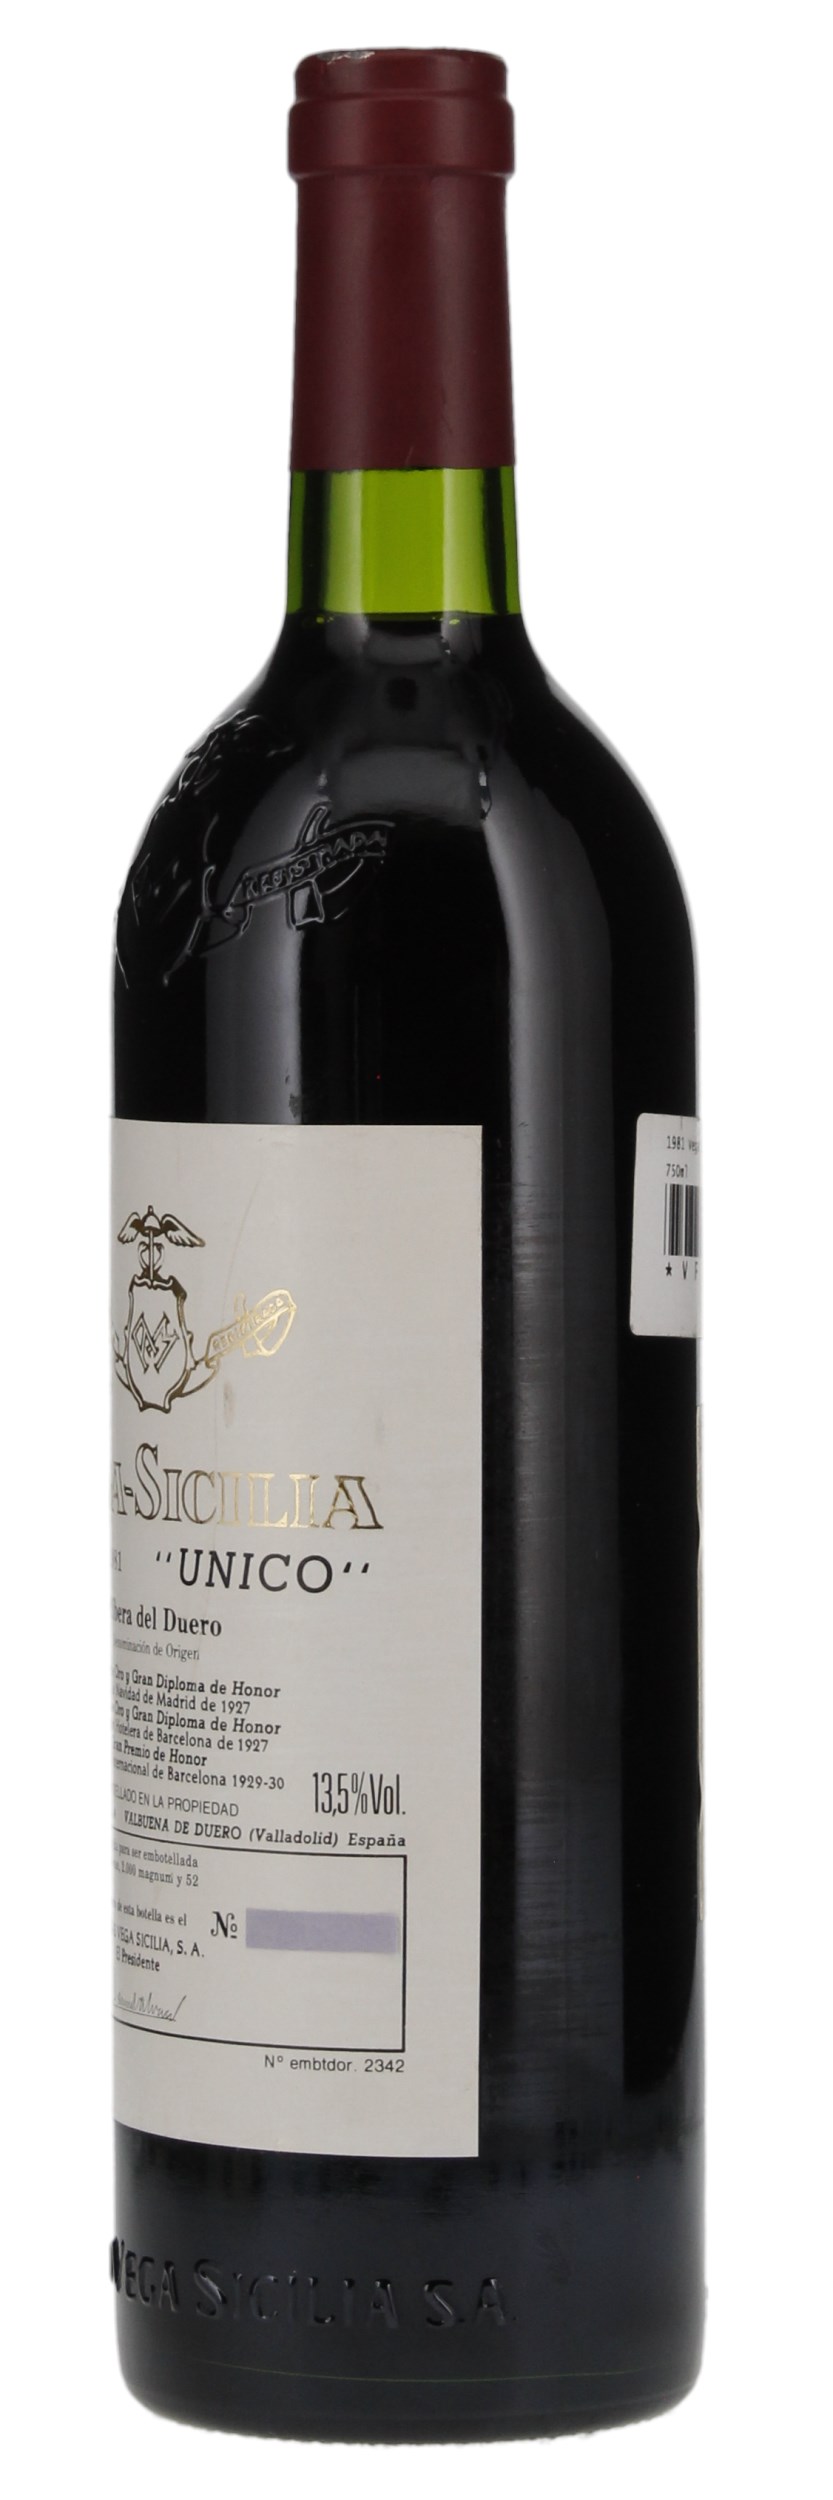 1981 Vega Sicilia Unico, 750ml